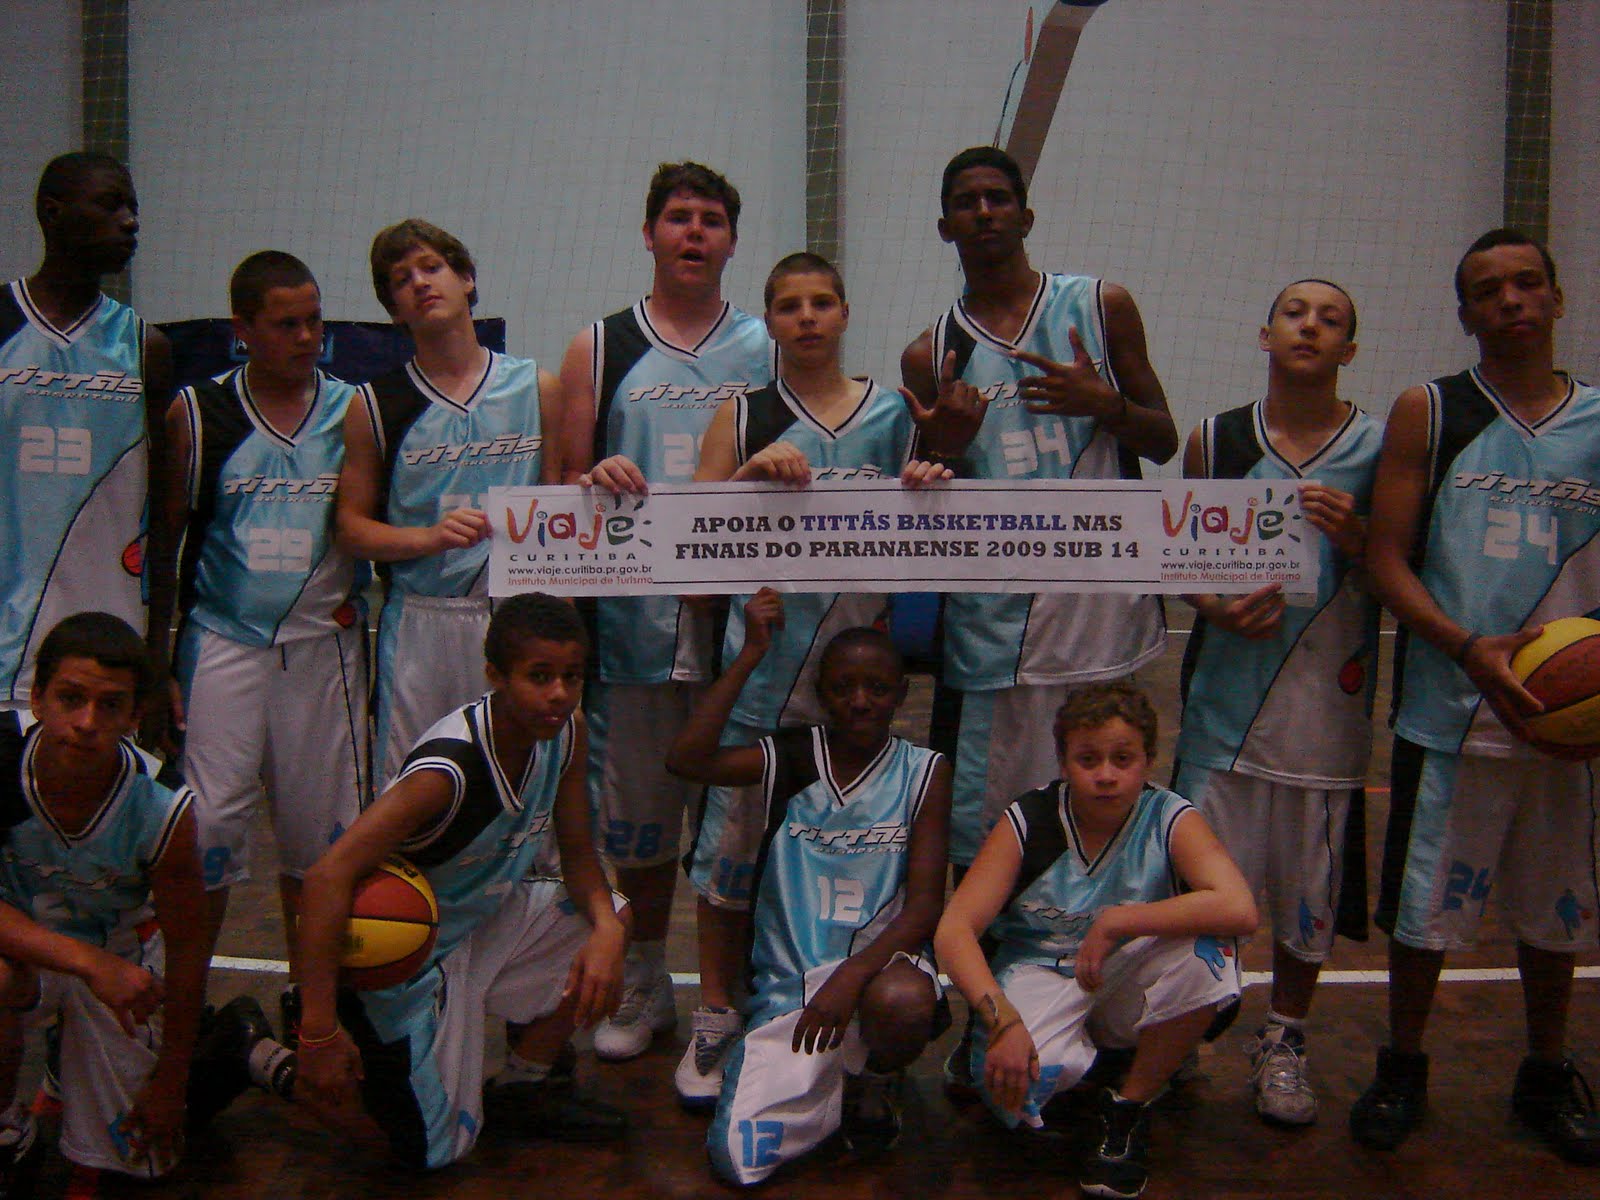 Tittãs Curitiba Basketball Blog Maio 2010